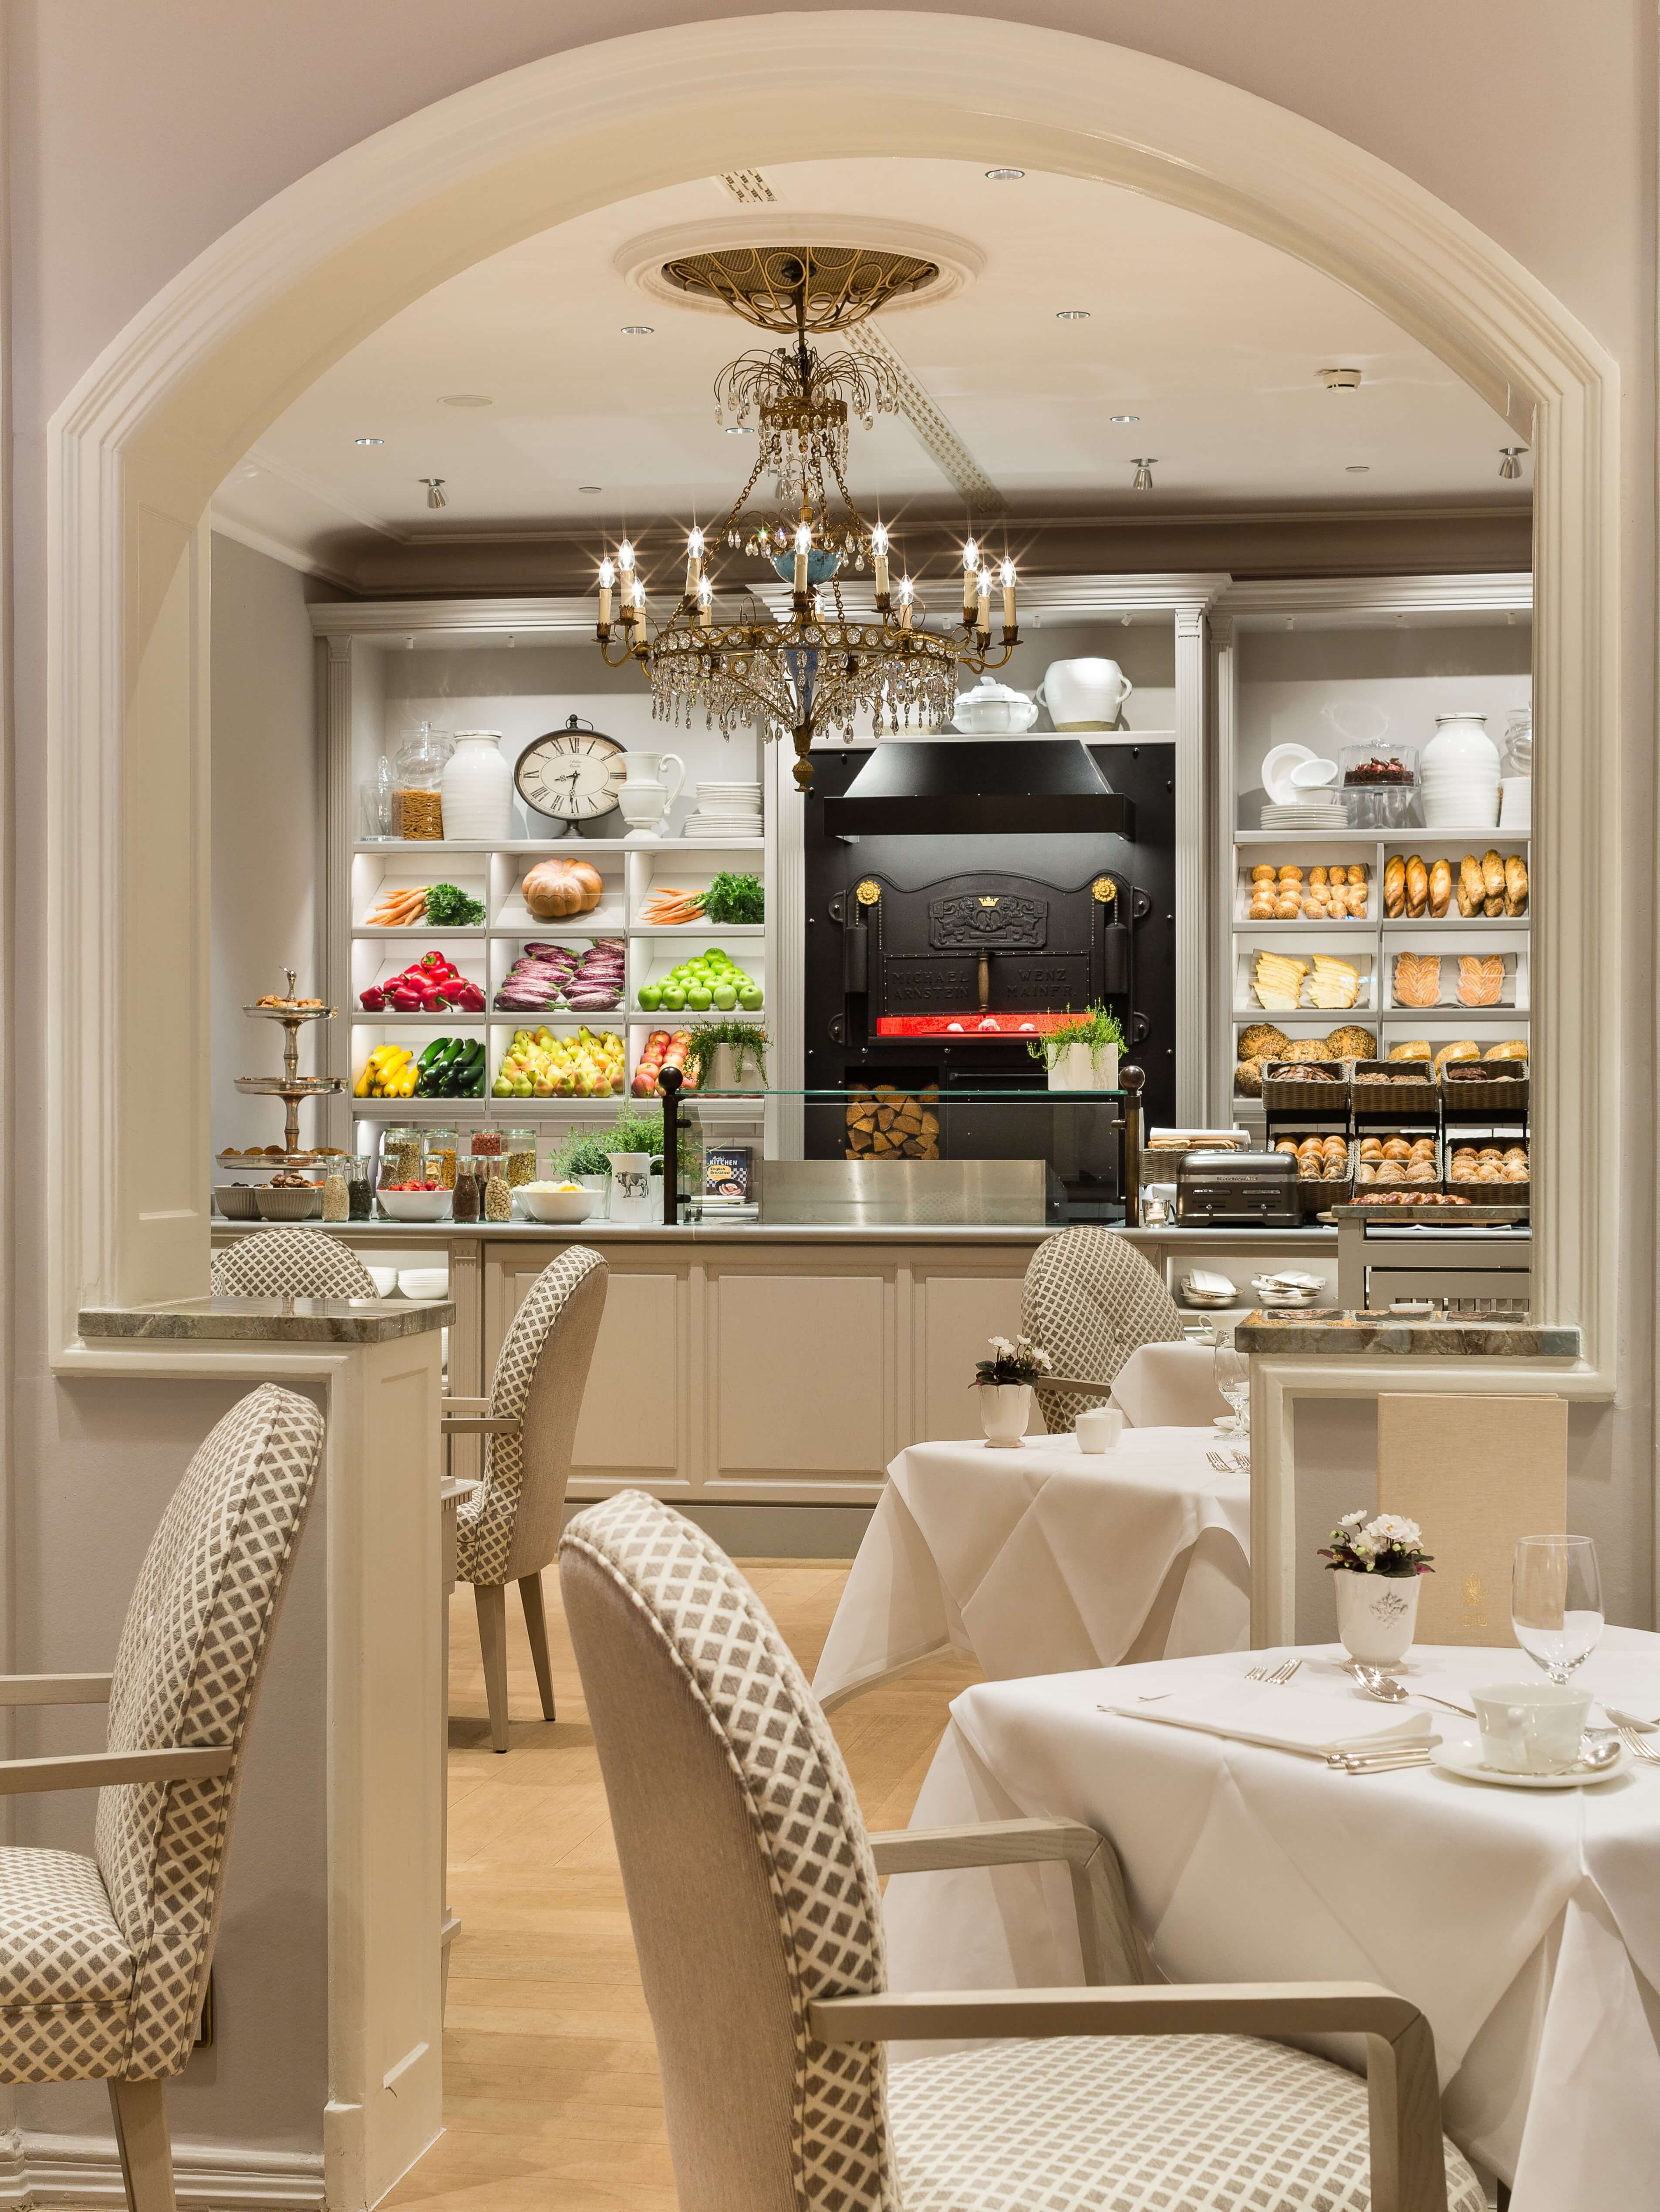 Café Condi - Fairmont Hotel Vier Jahreszeiten luxury Hotel